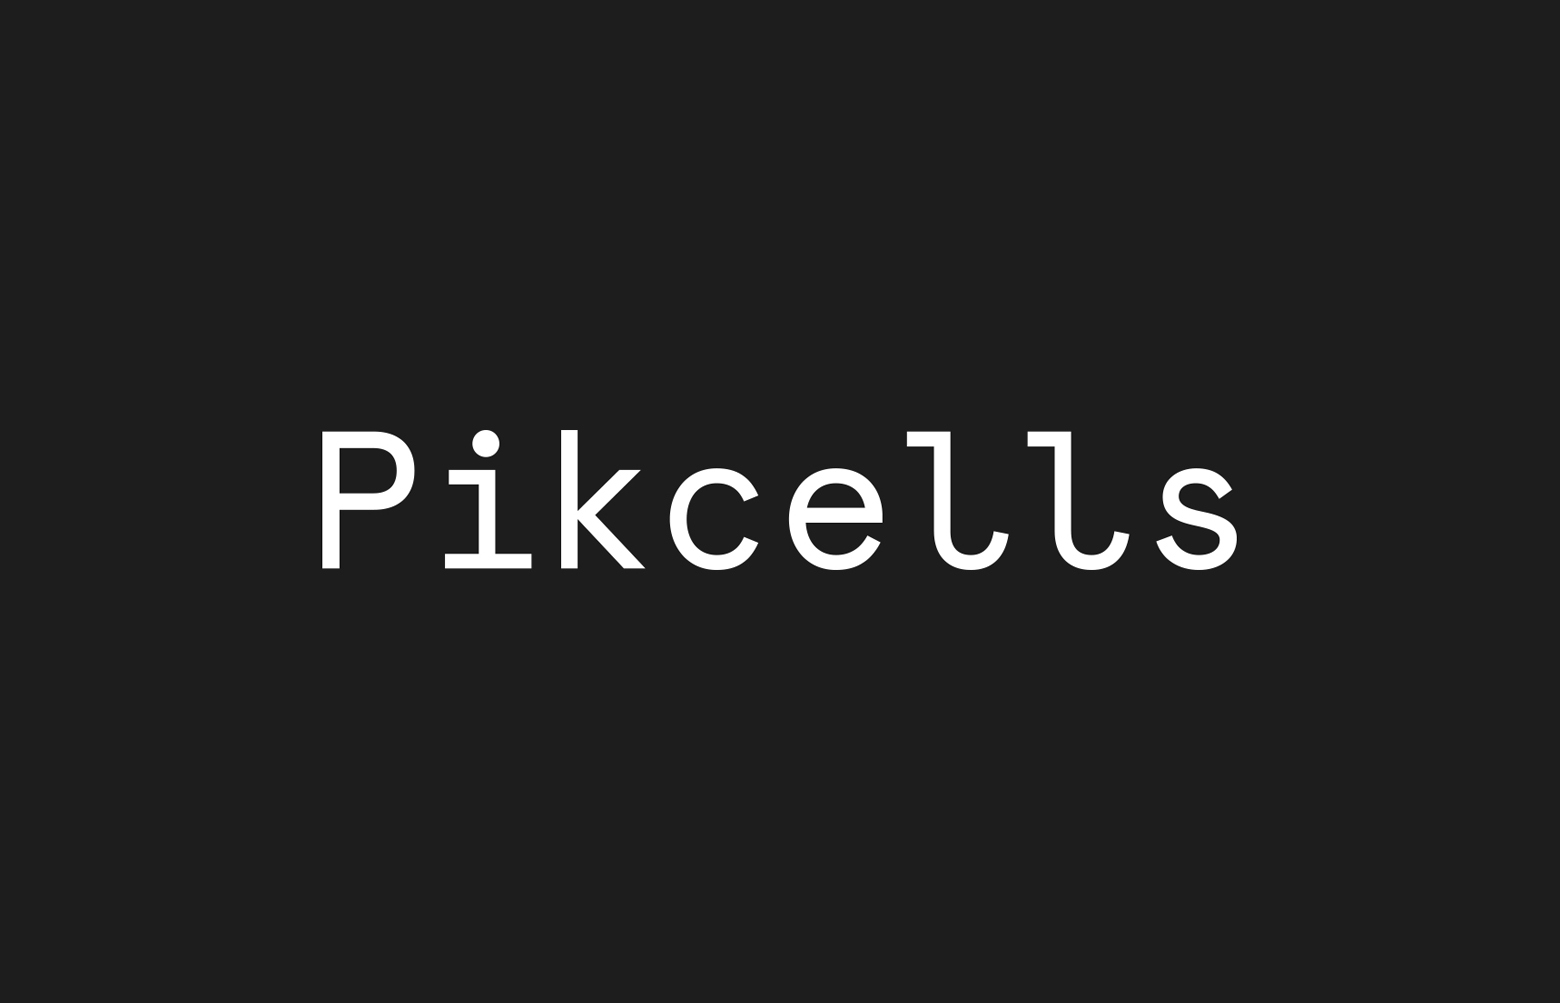 Pikcells logotype